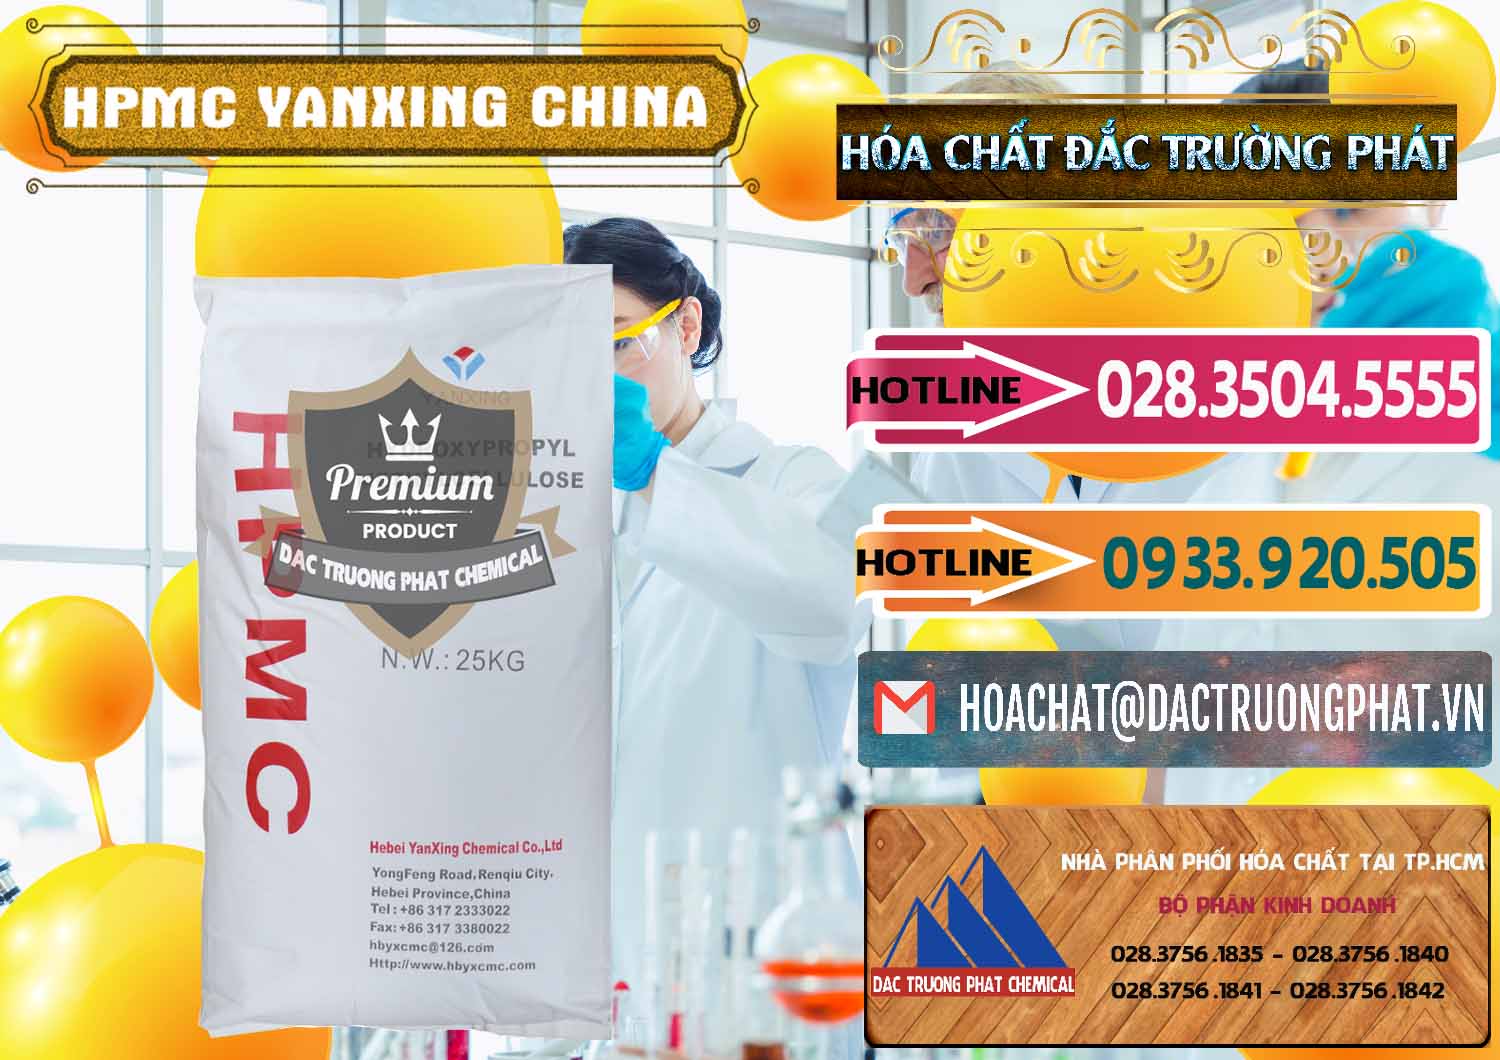 Chuyên bán _ cung ứng Chất Tạo Đặc HPMC - Hydroxypropyl Methyl Cellulose Yanxing Trung Quốc China - 0483 - Công ty chuyên bán _ cung cấp hóa chất tại TP.HCM - dactruongphat.vn